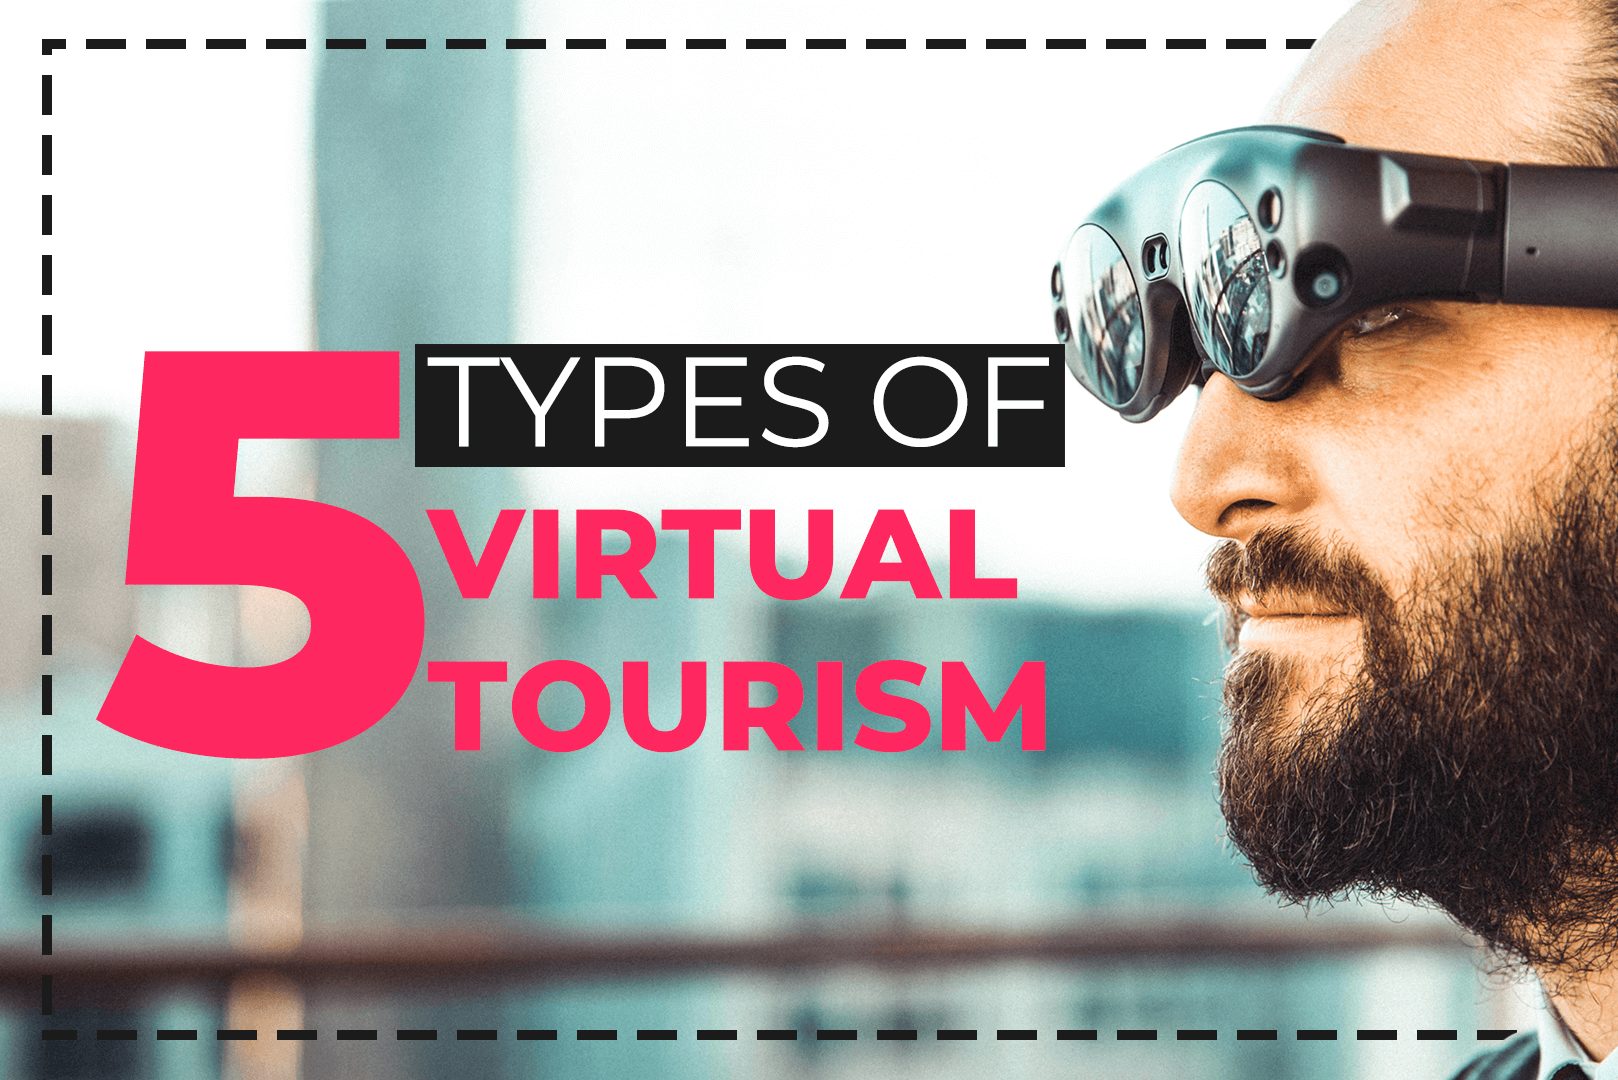 virtual tourism types